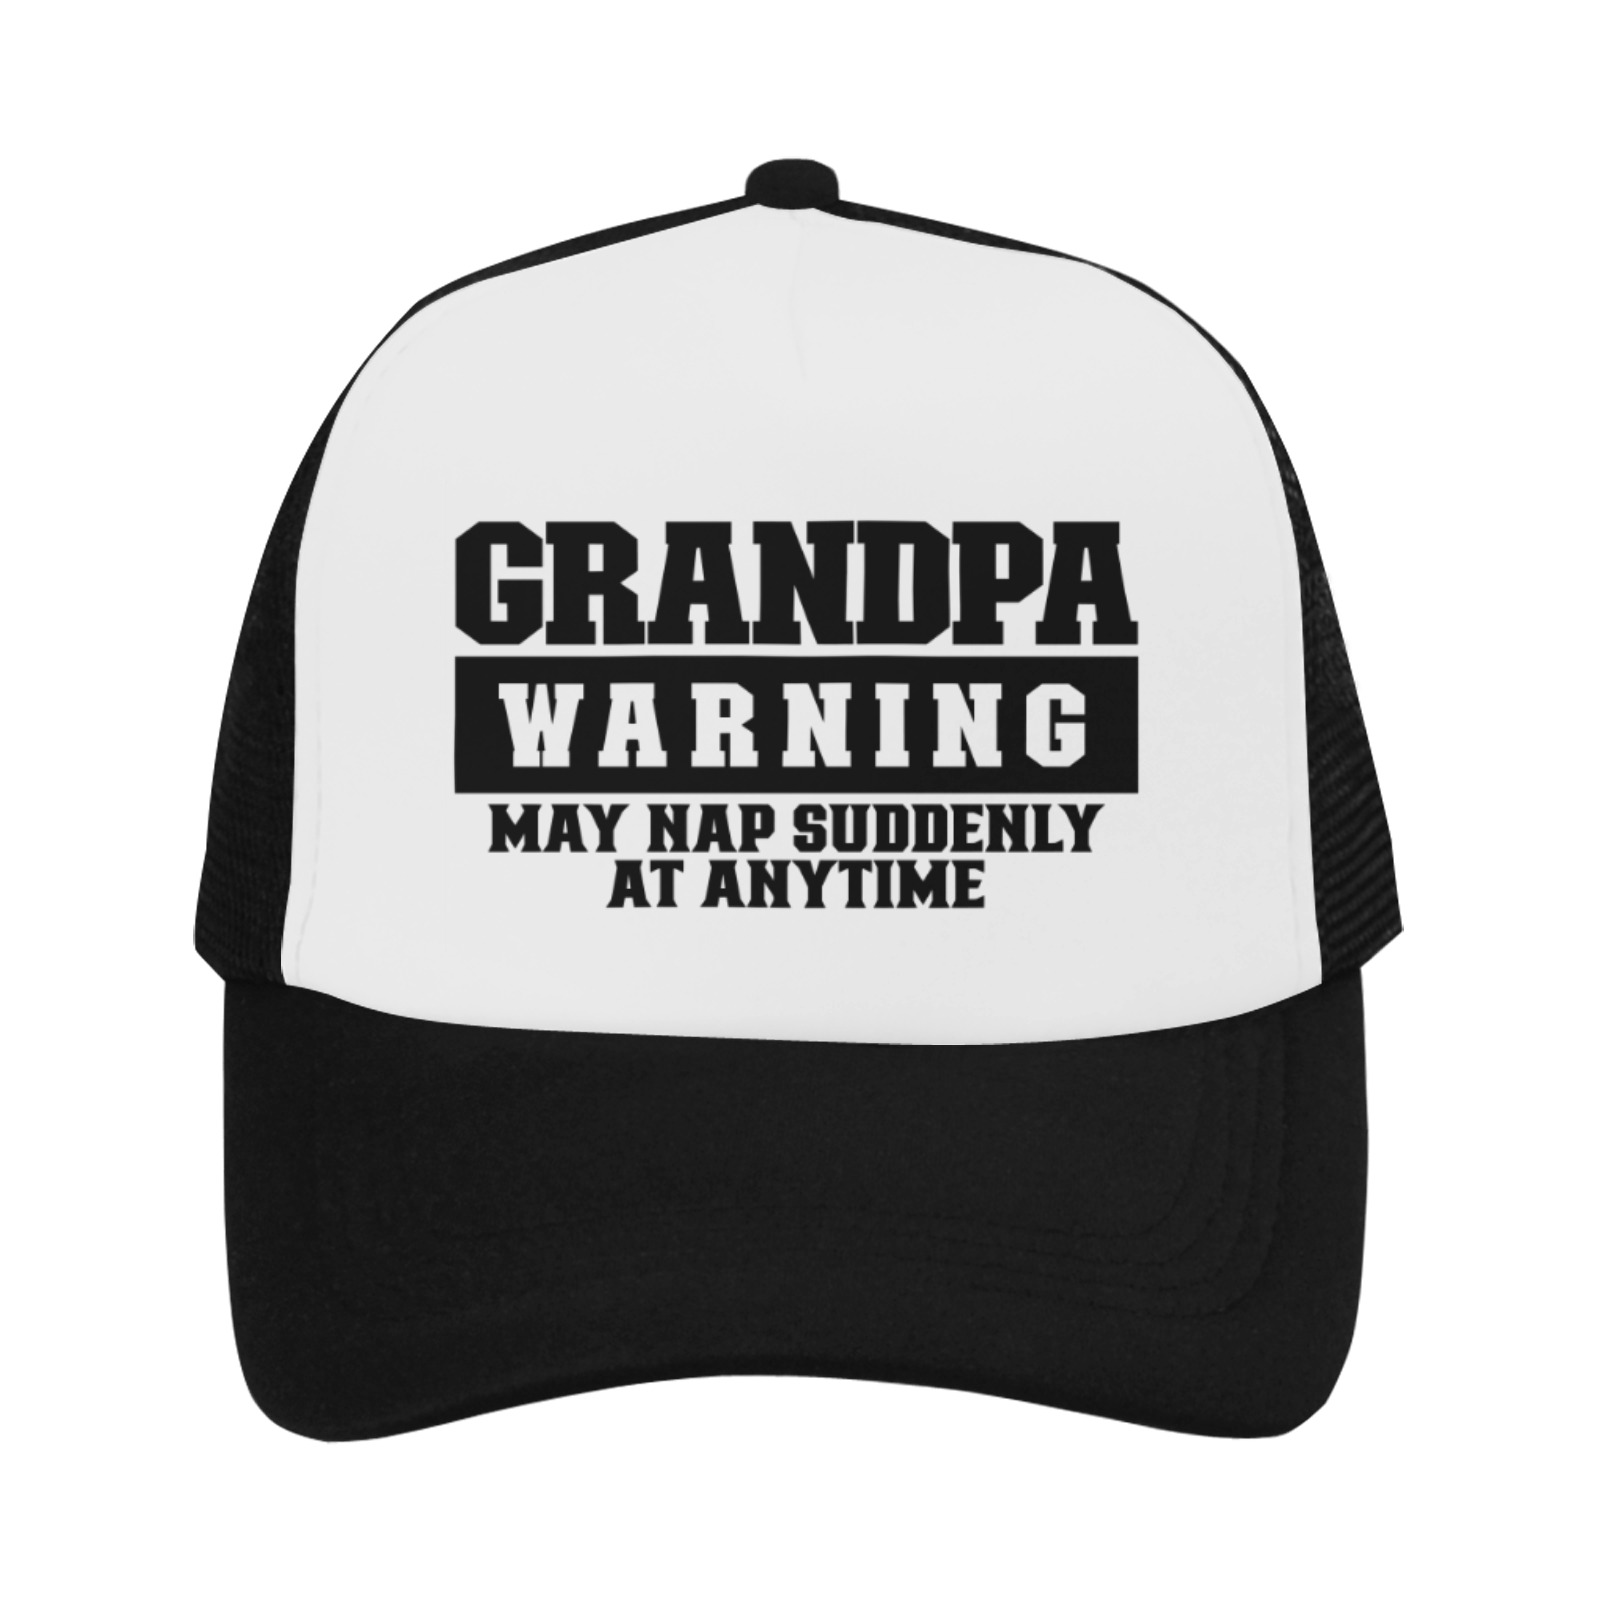 Grandpa Waring May Nap Suddenly At Anytime Trucker Hat